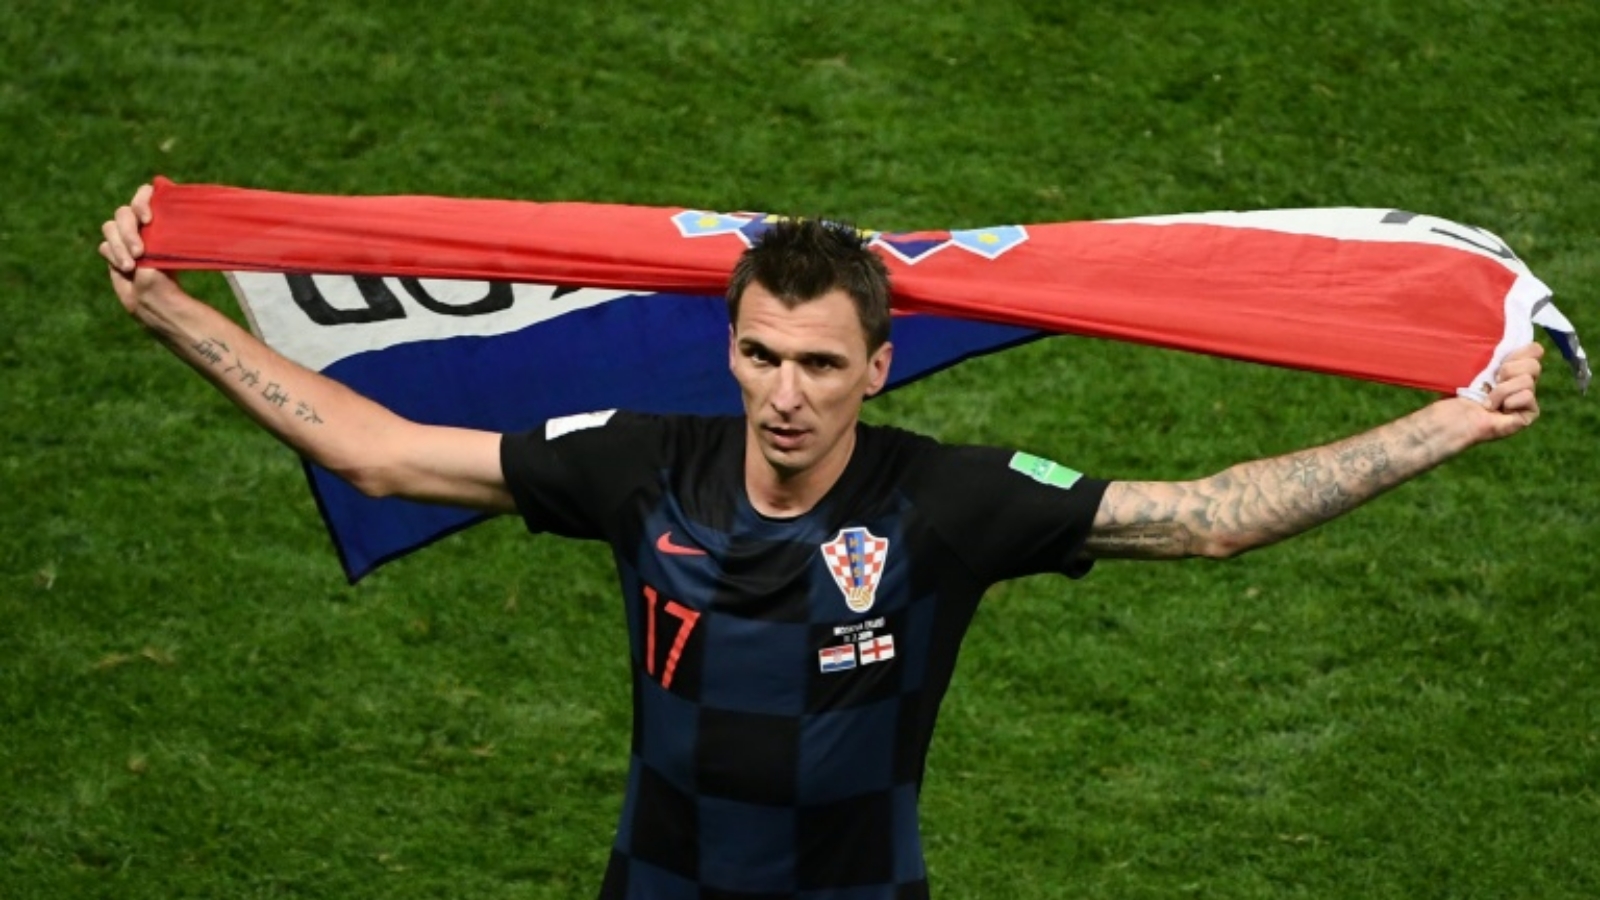 مهاجم المنتخب الكرواتي ماريو ماندجوكيتش يحتفل بالتأهل إلى المباراة النهائية لكأس العالم عقب الفوز على انكلترا 2-1 بعد التمديد في نصف النهائي في موسكو. بتاريخ 11 تموز/يوليو 2018.